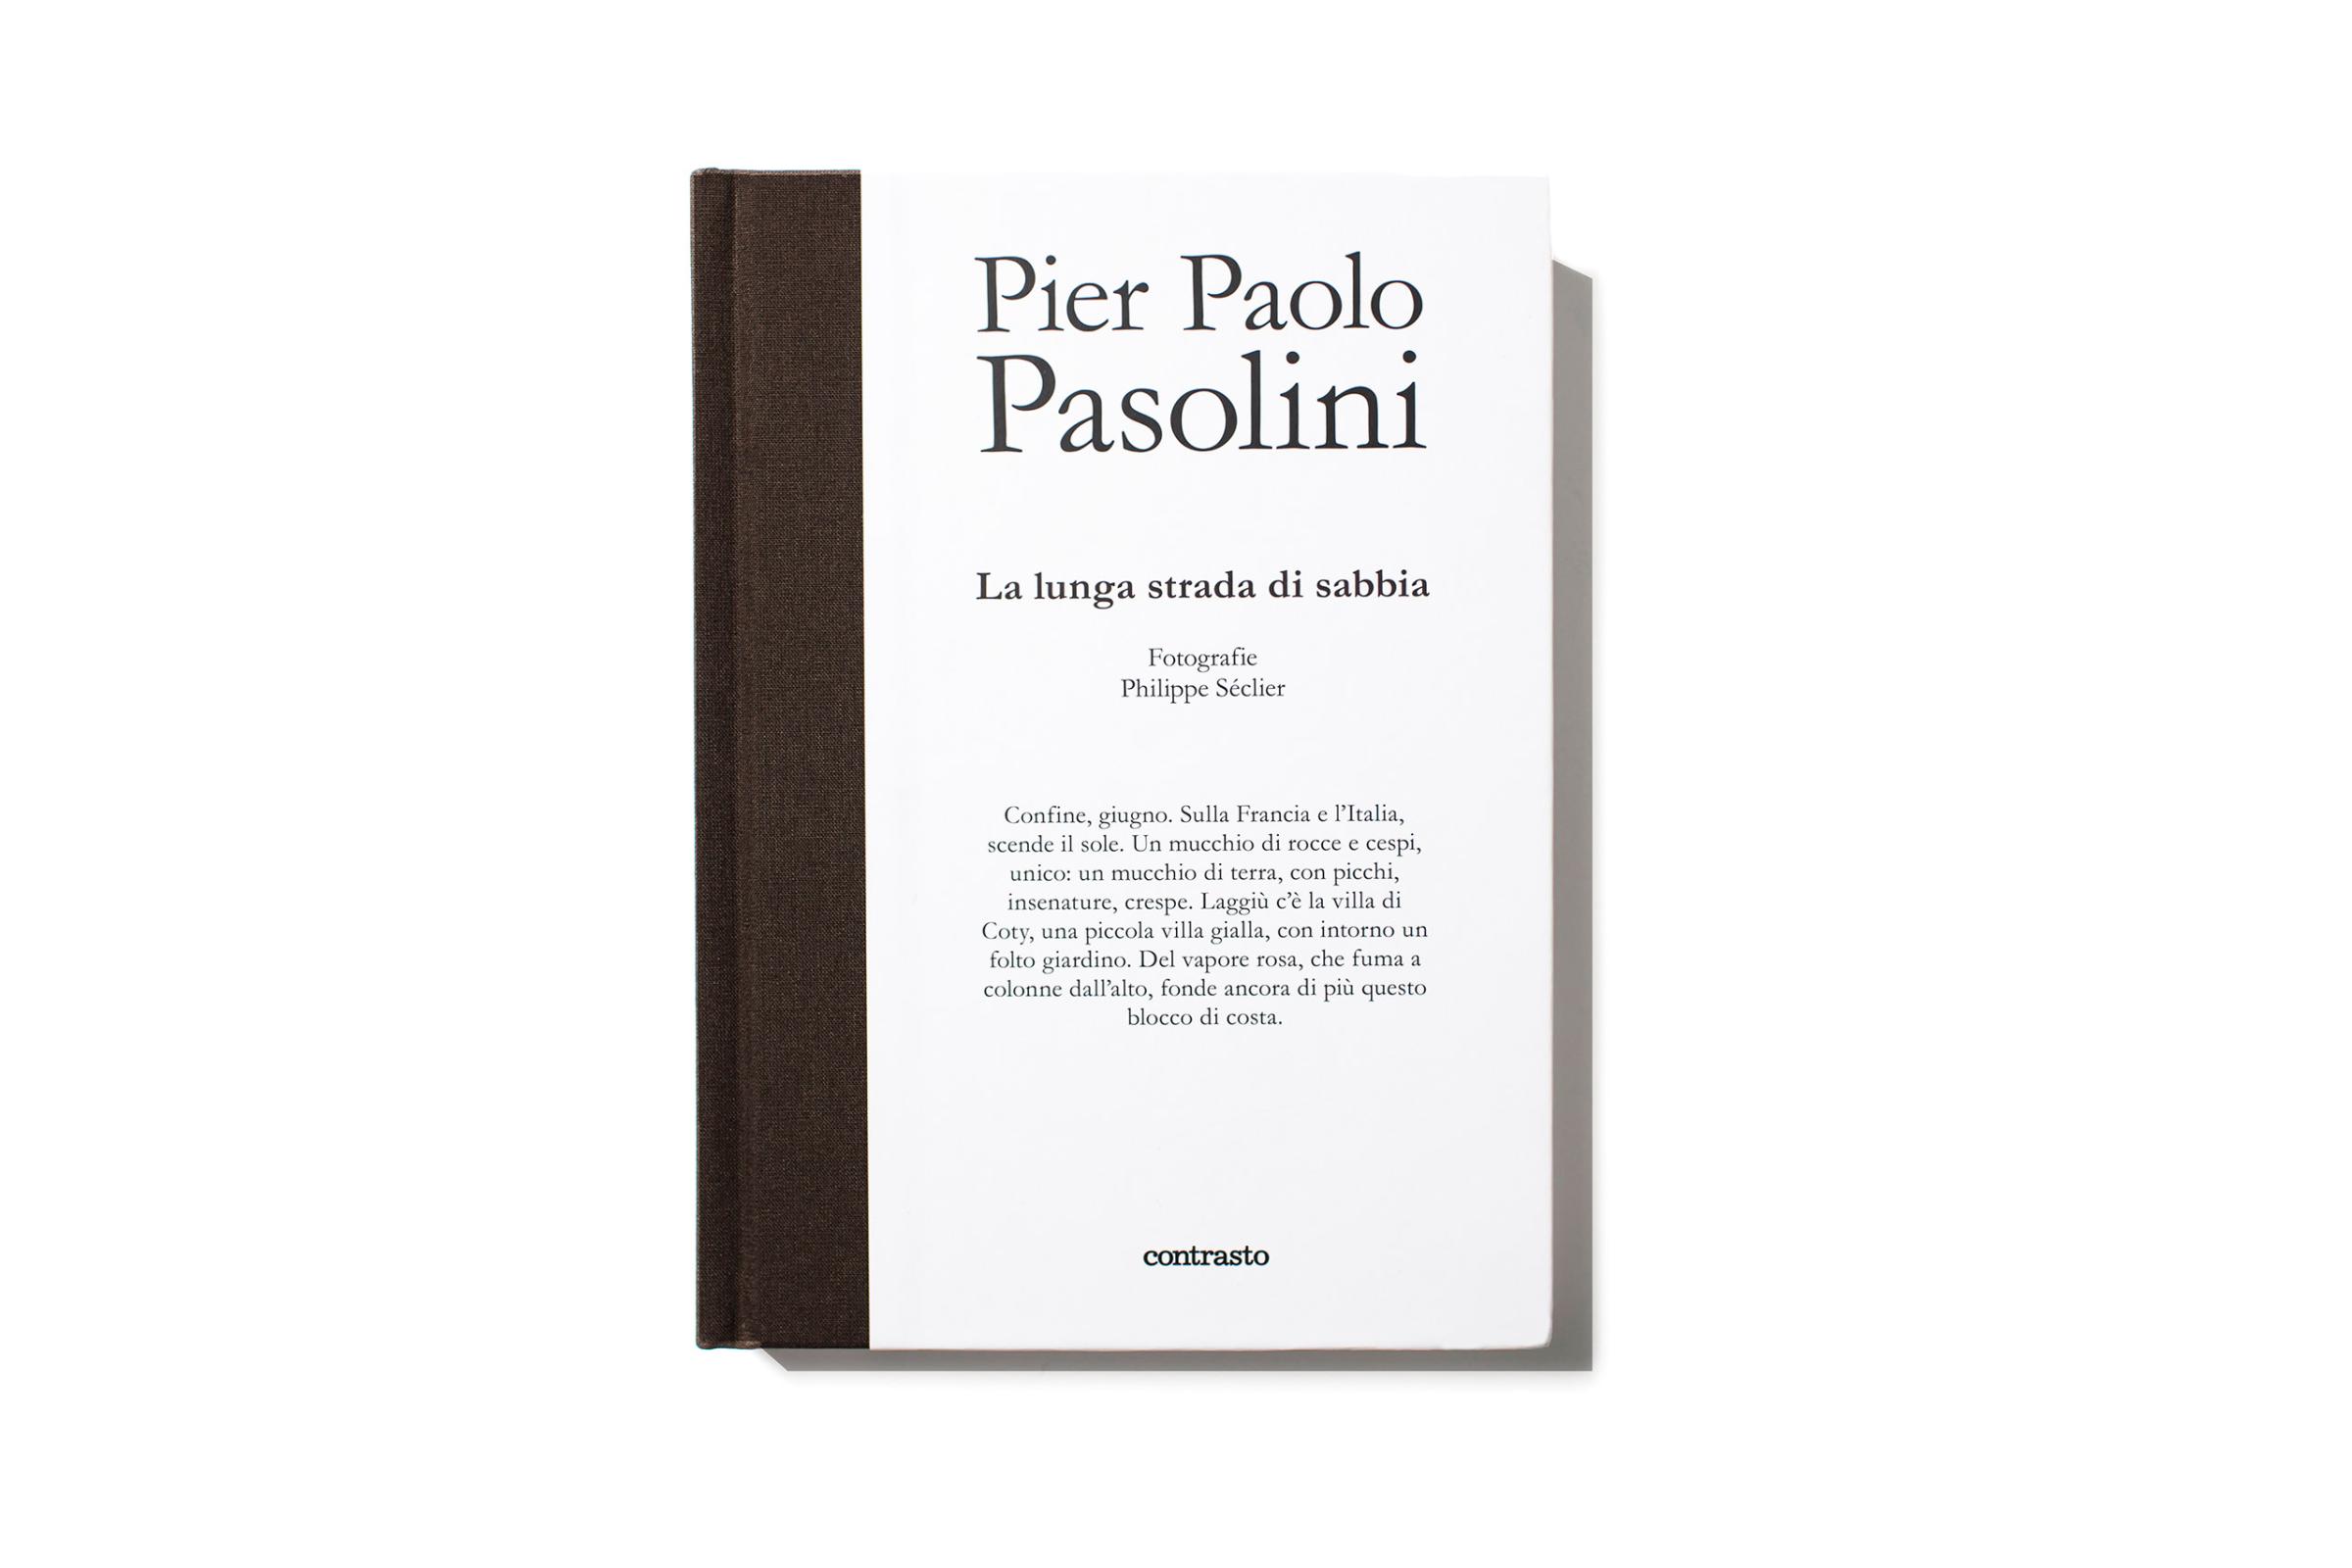 Pier Paolo Pasolini - La lunga strada di sabbia, published by Contrasto, selected by Yolanda Cuomo, Book Designer.